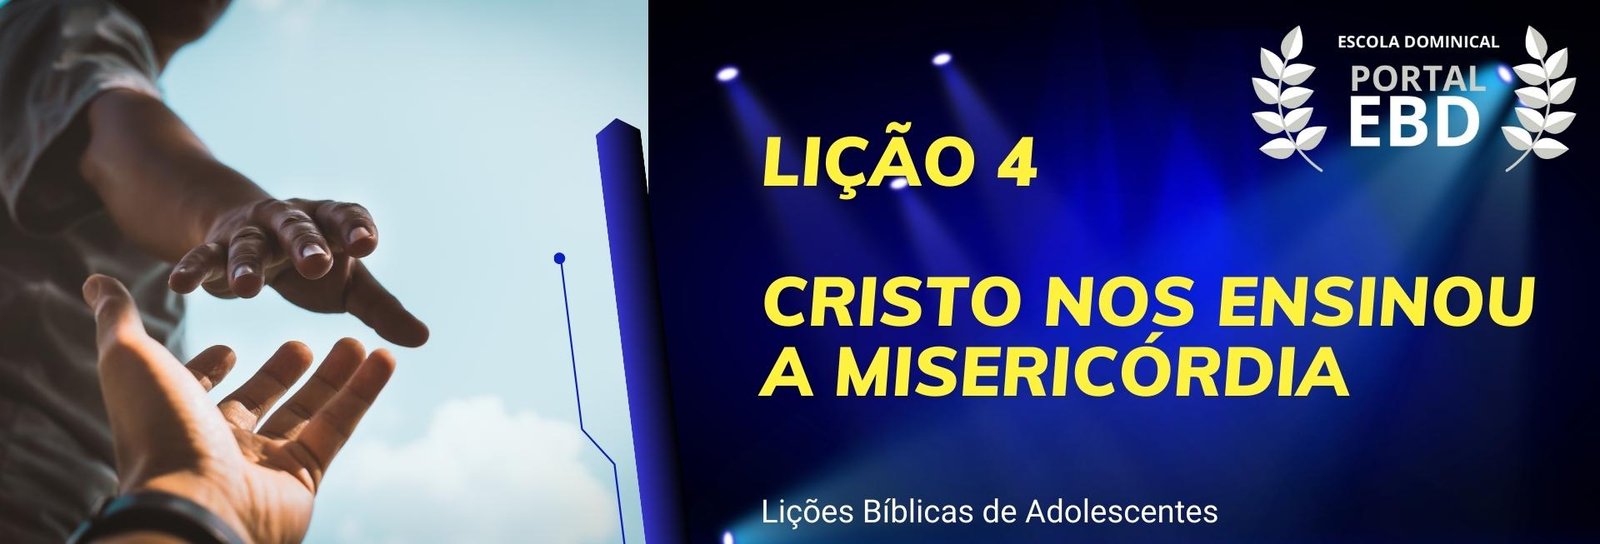 Lição 4 - Cristo nos ensinou a misericórdia - SLIDES E VIDEOAULAS         